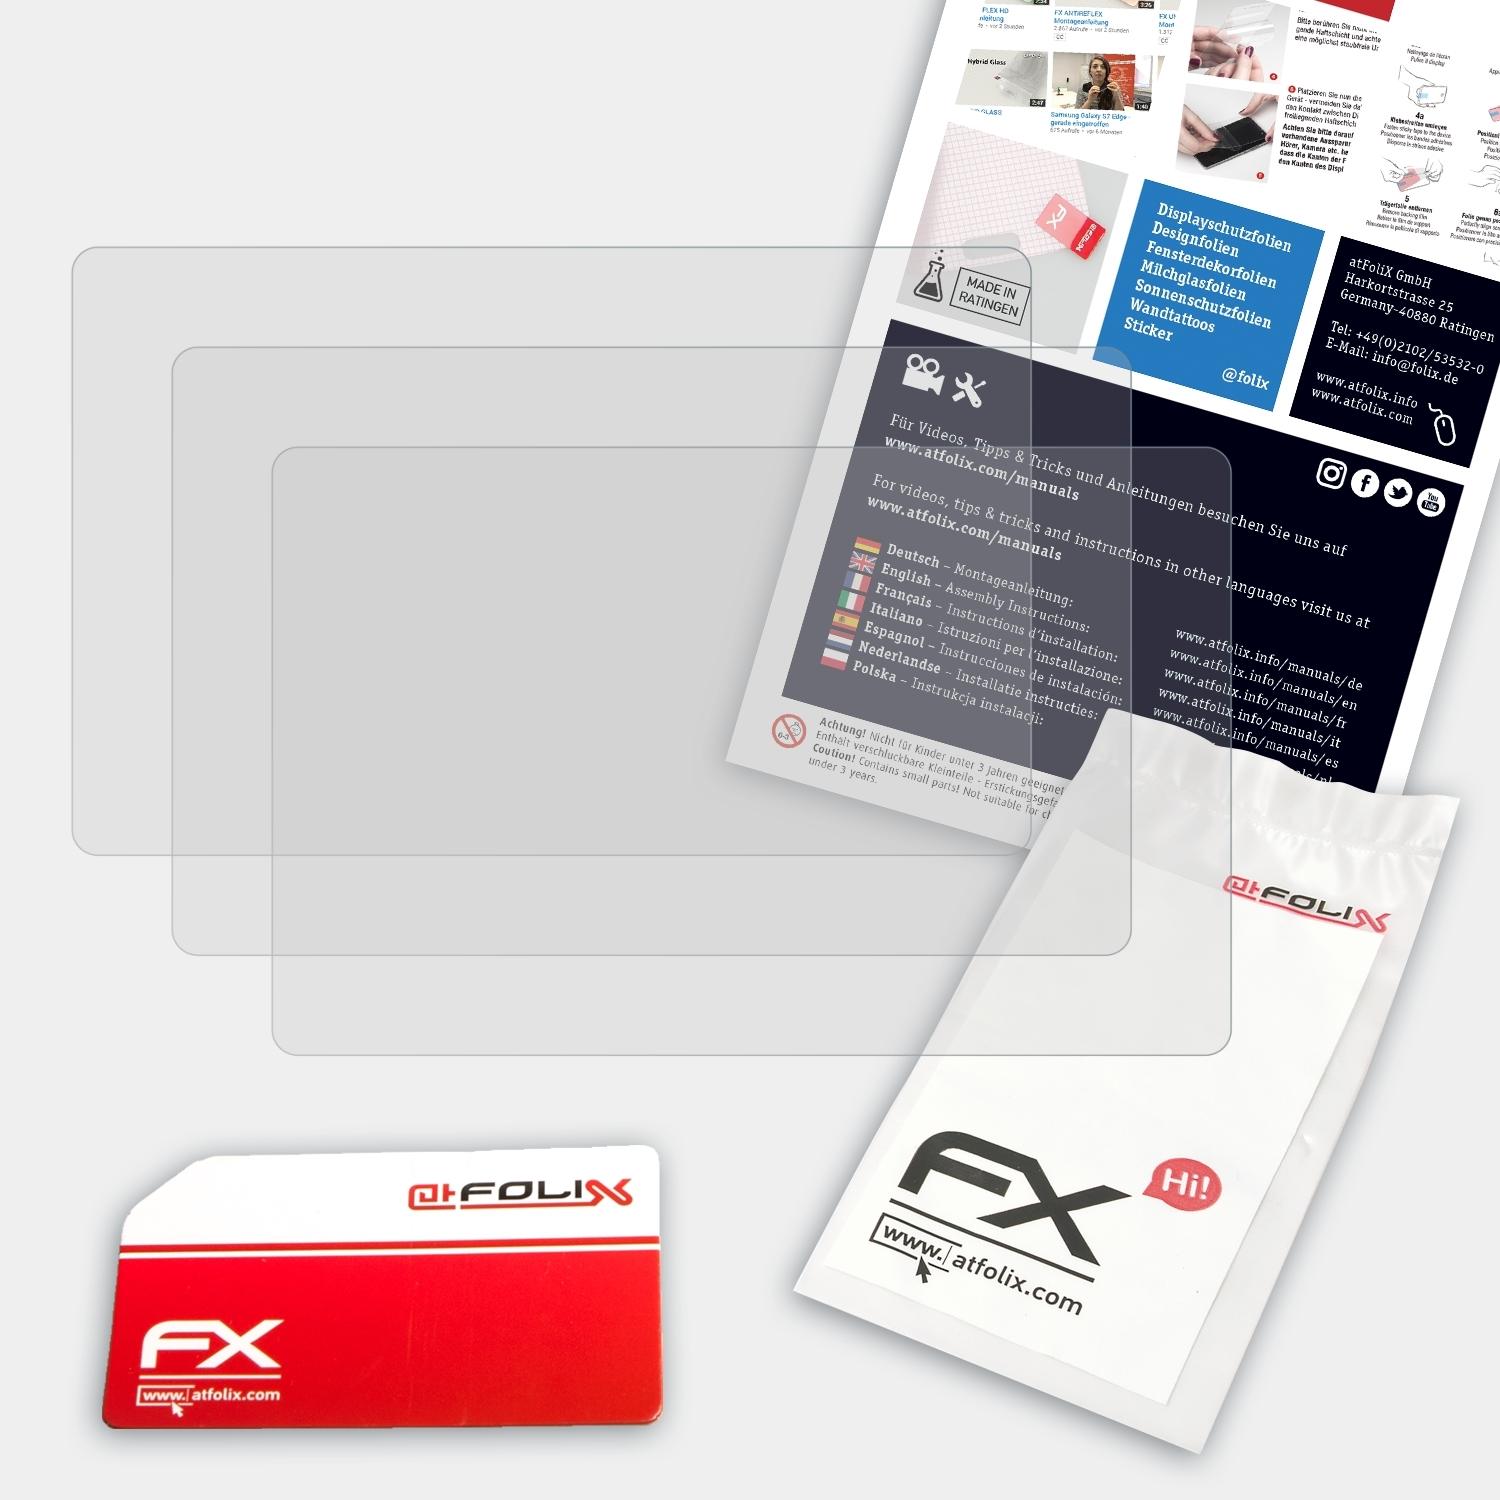 ATFOLIX 3x FX-Antireflex Displayschutz(für DMC-FZ72) Panasonic Lumix